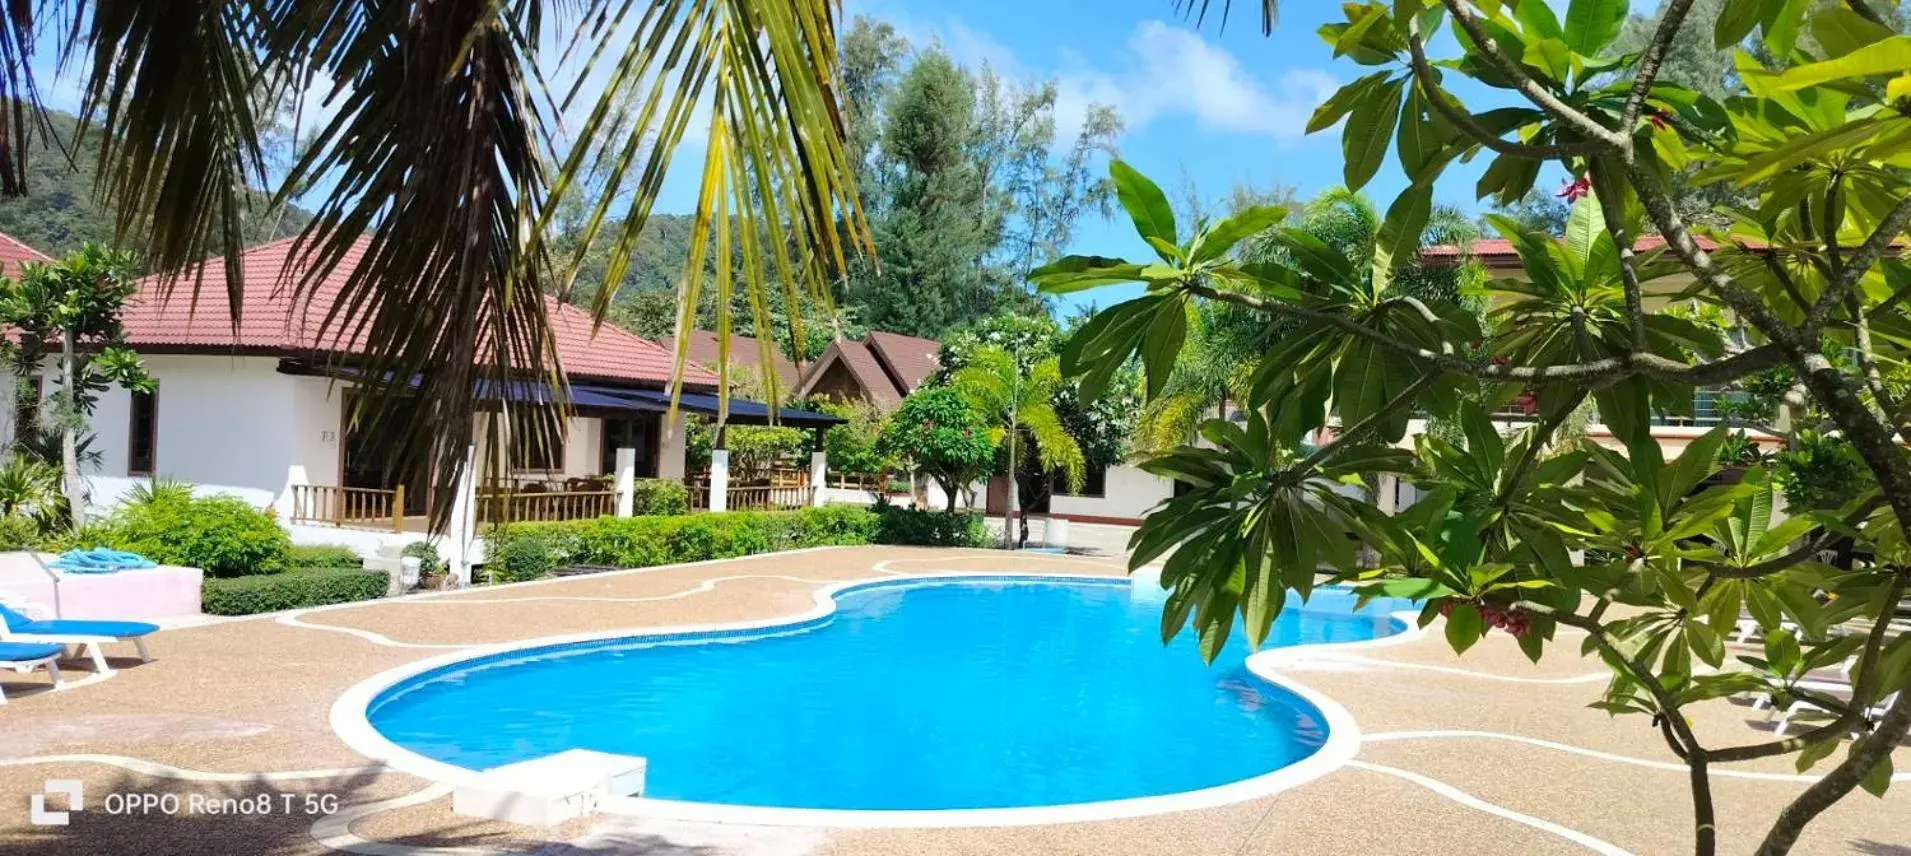 Swimming Pool in D.R. Lanta Bay Resort